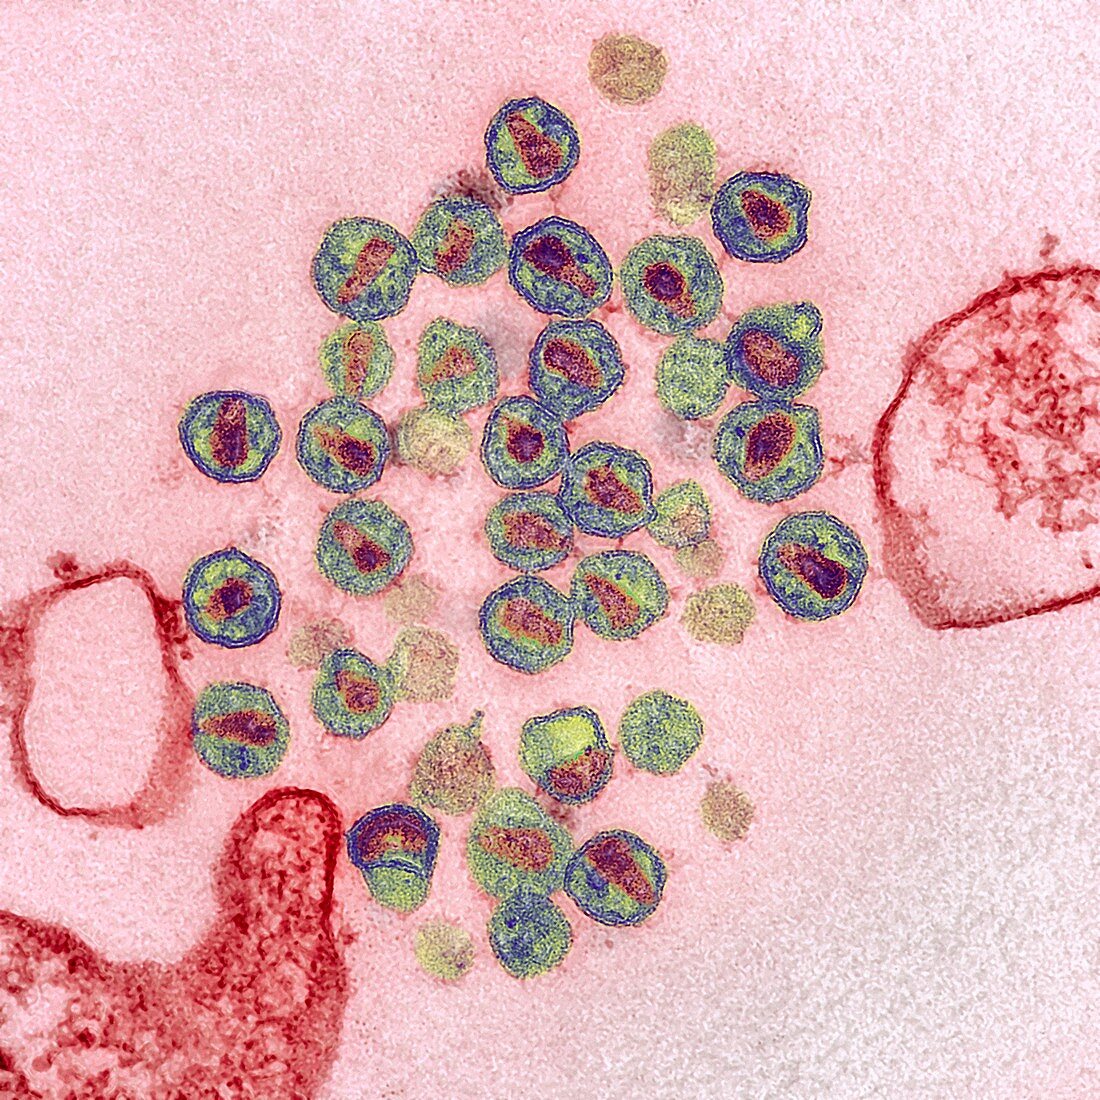 HIV virus particles,TEM